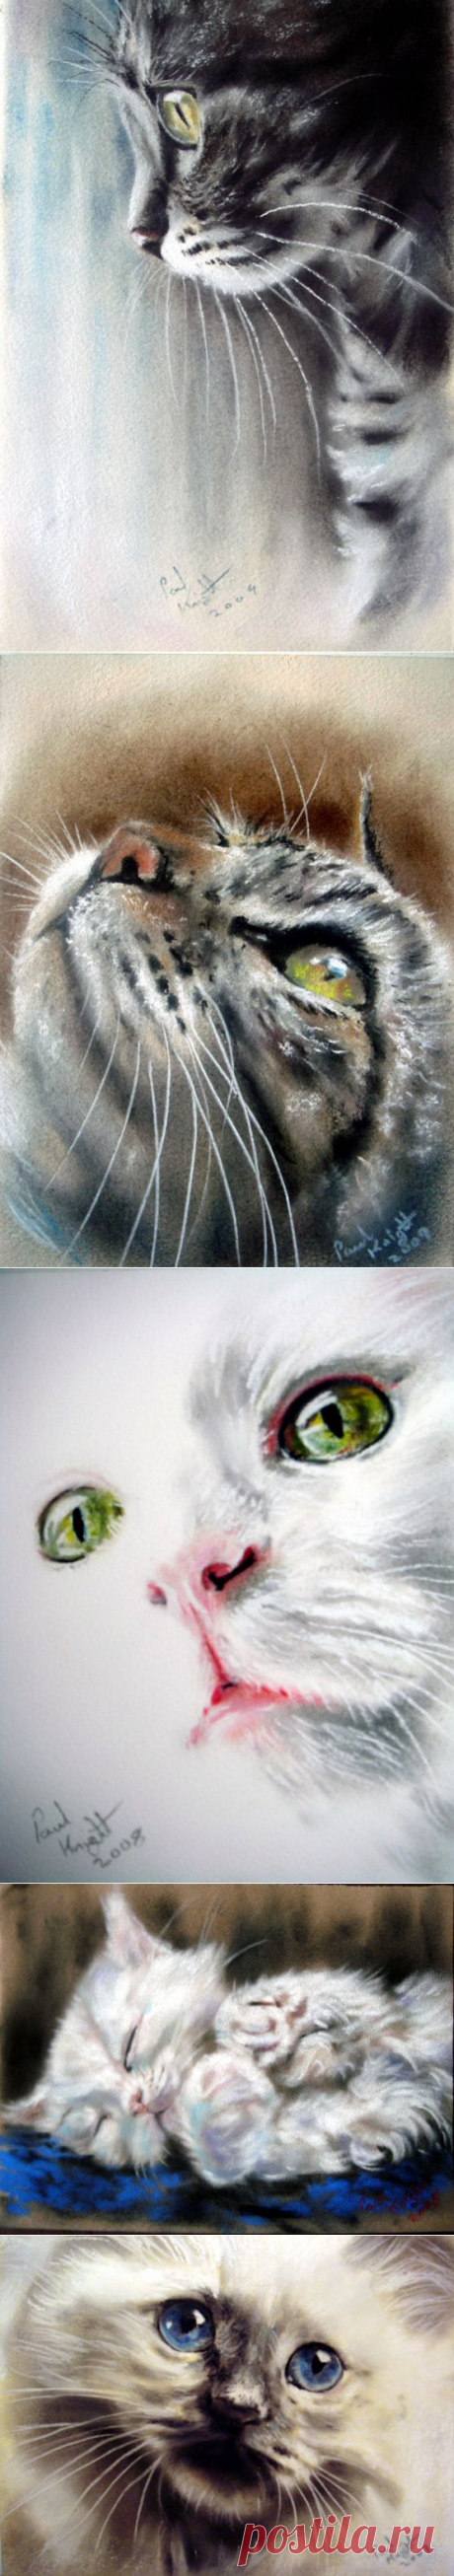 Котоарт от Paul Knight / Котоарт / CATFOTO.COM фотографии кошек и котят, дикие кошки, блоги любителей кошек